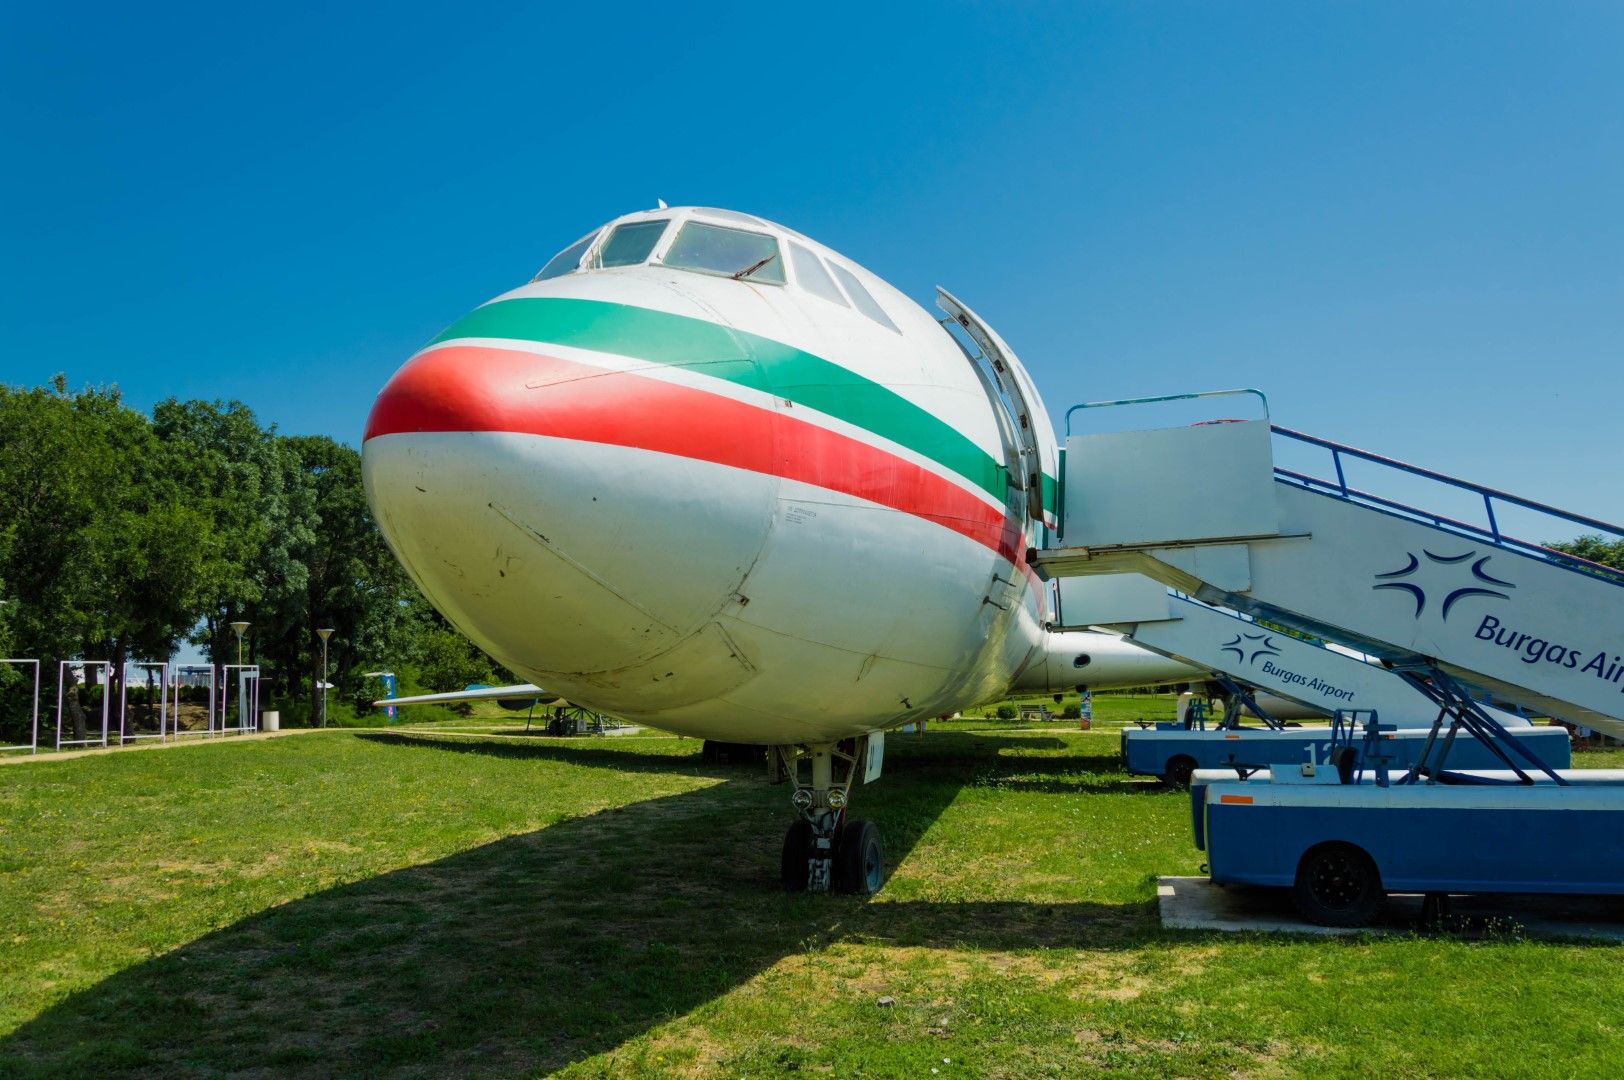 Самолет Ту-154, в който изложба разказва историята на БГА "Балкан"